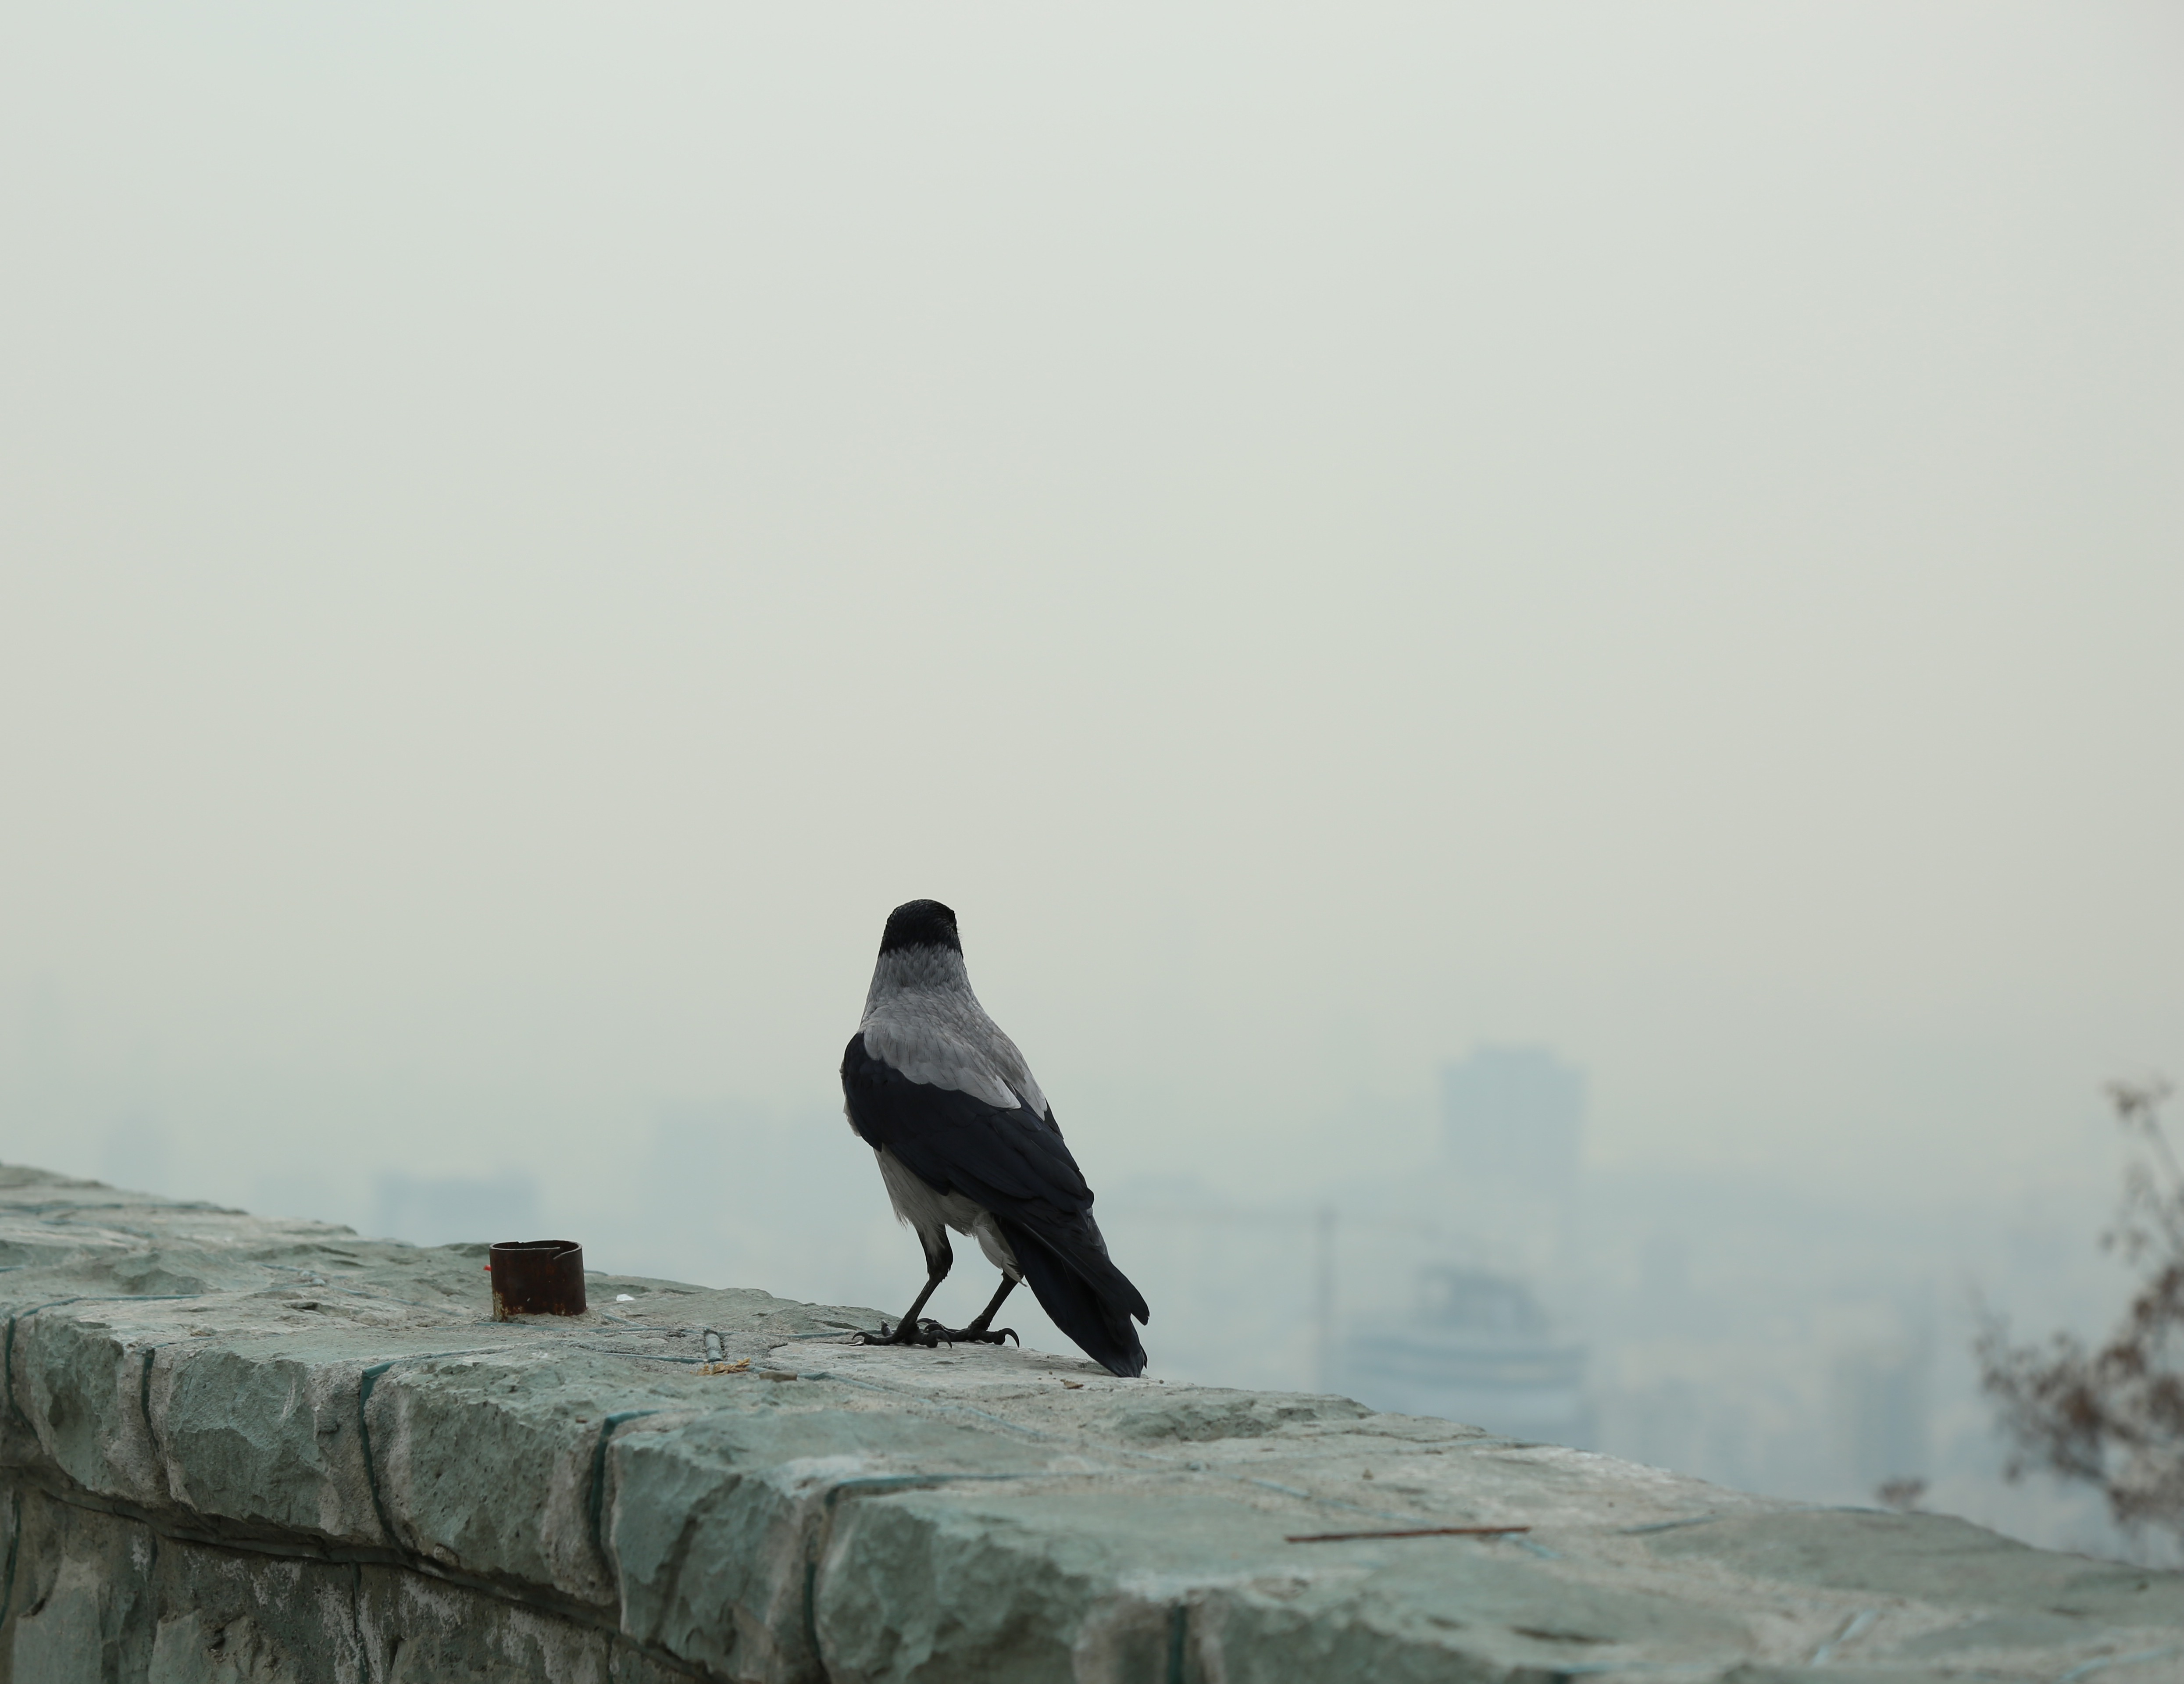 شاخص آلودگی هوا در کدام شهر به ۵۰۰رسید؟